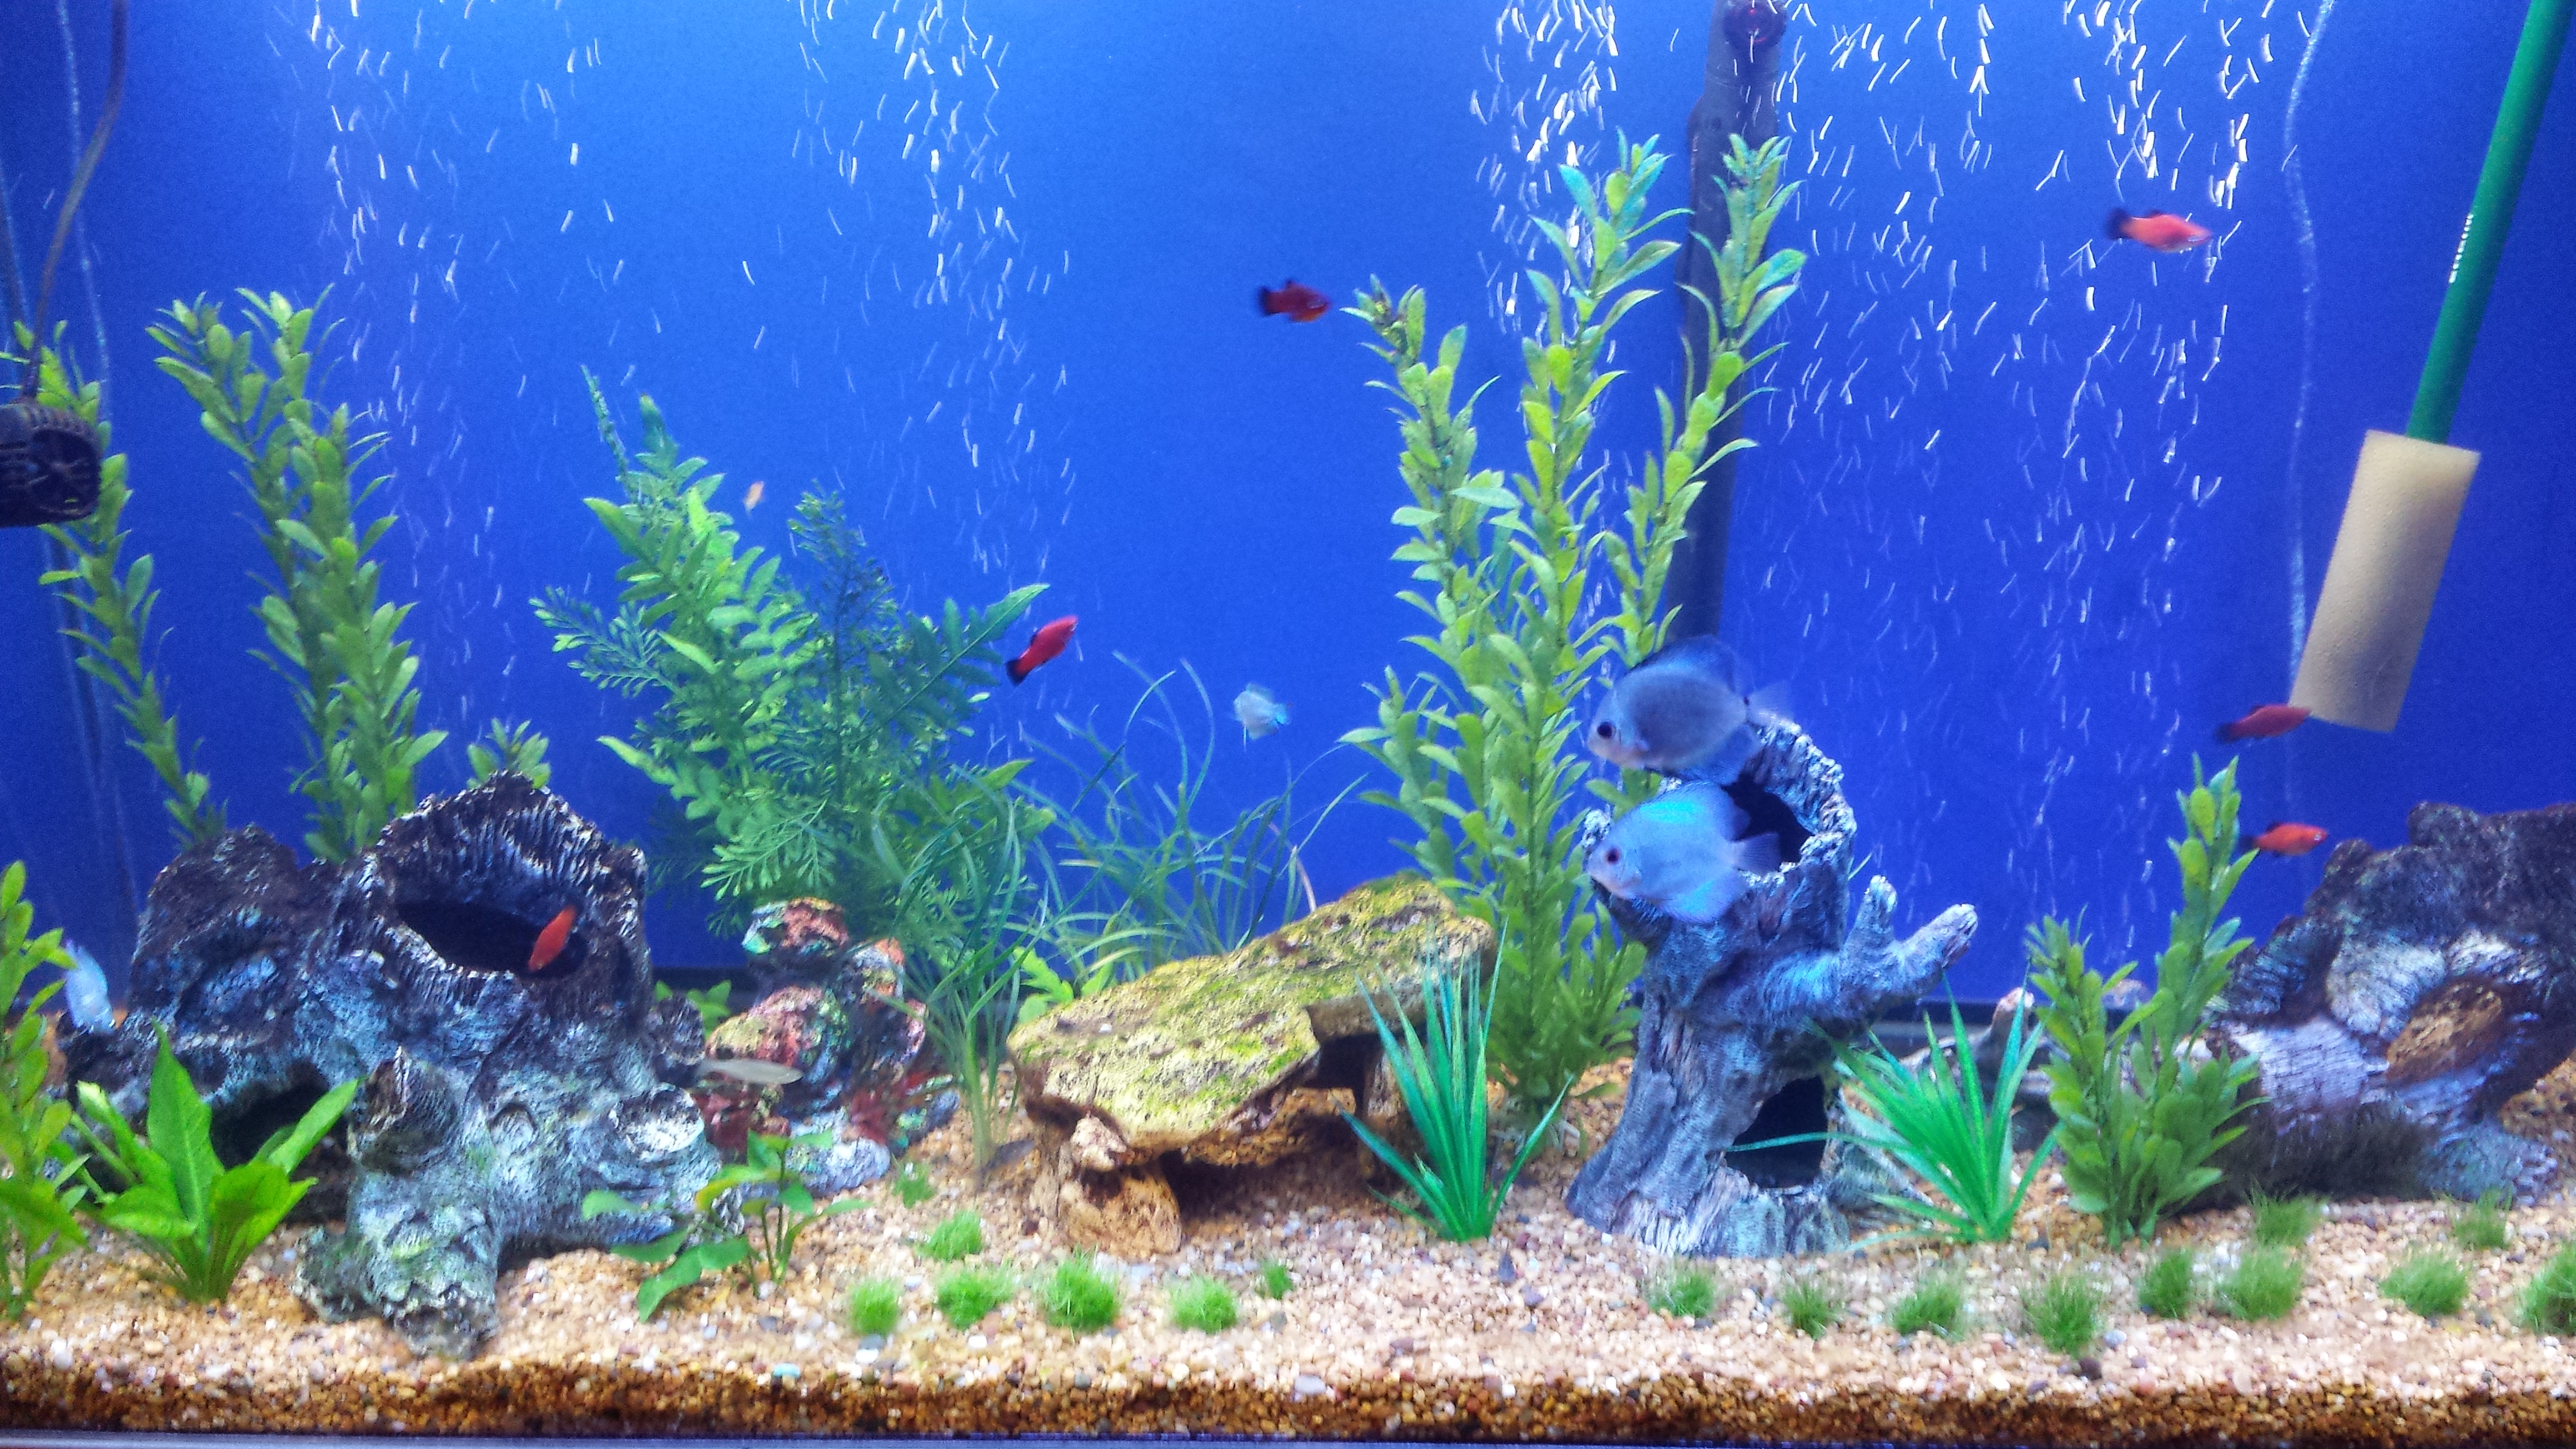 fish tank wallpaper hd,freshwater aquarium,aquarium decor,aquarium,aquatic plant,marine biology